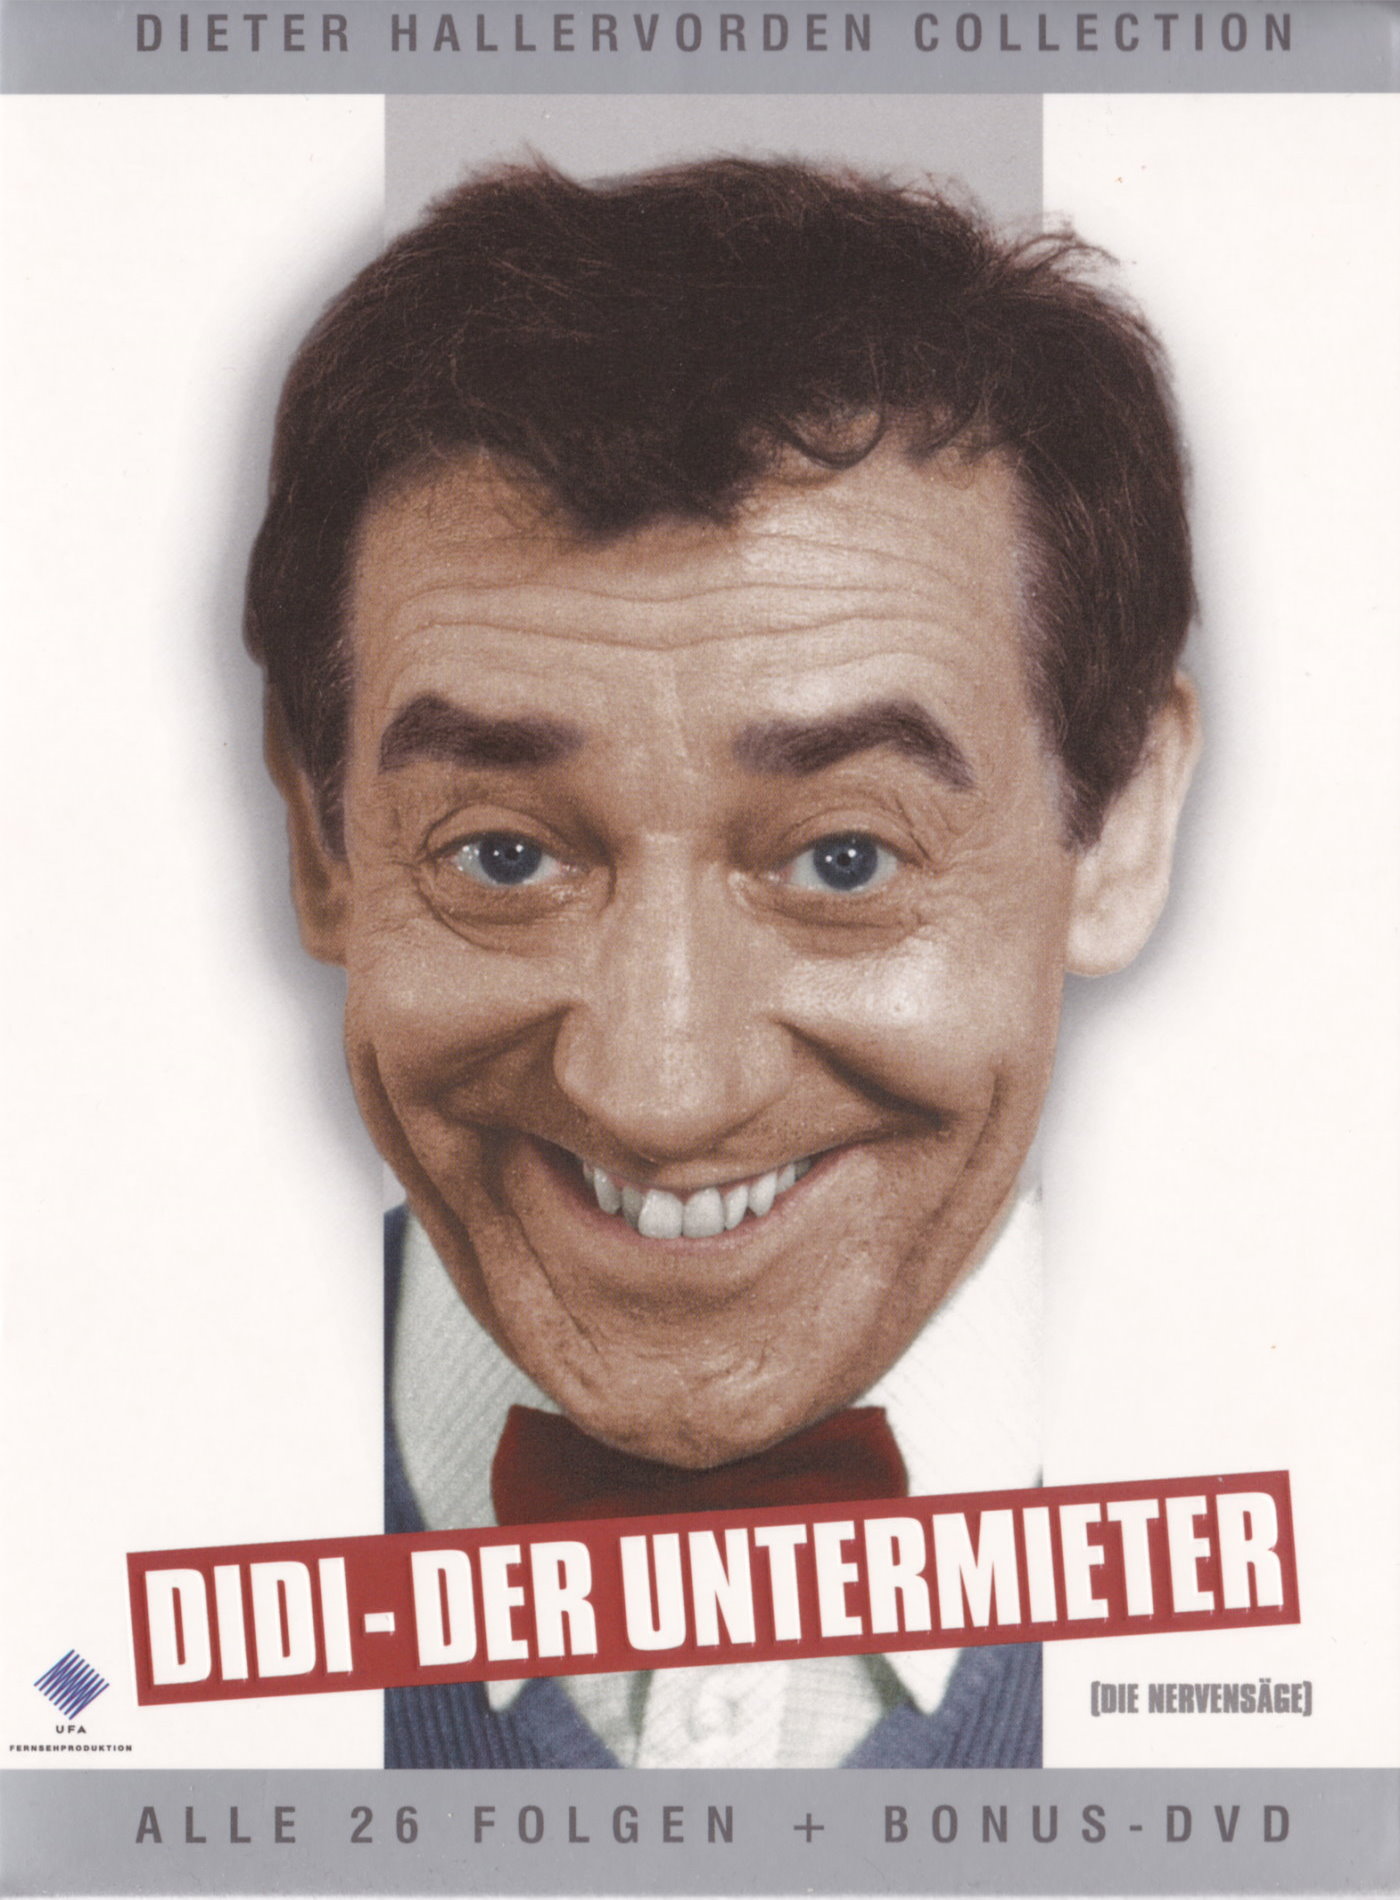 Cover - Didi - Der Untermieter.jpg